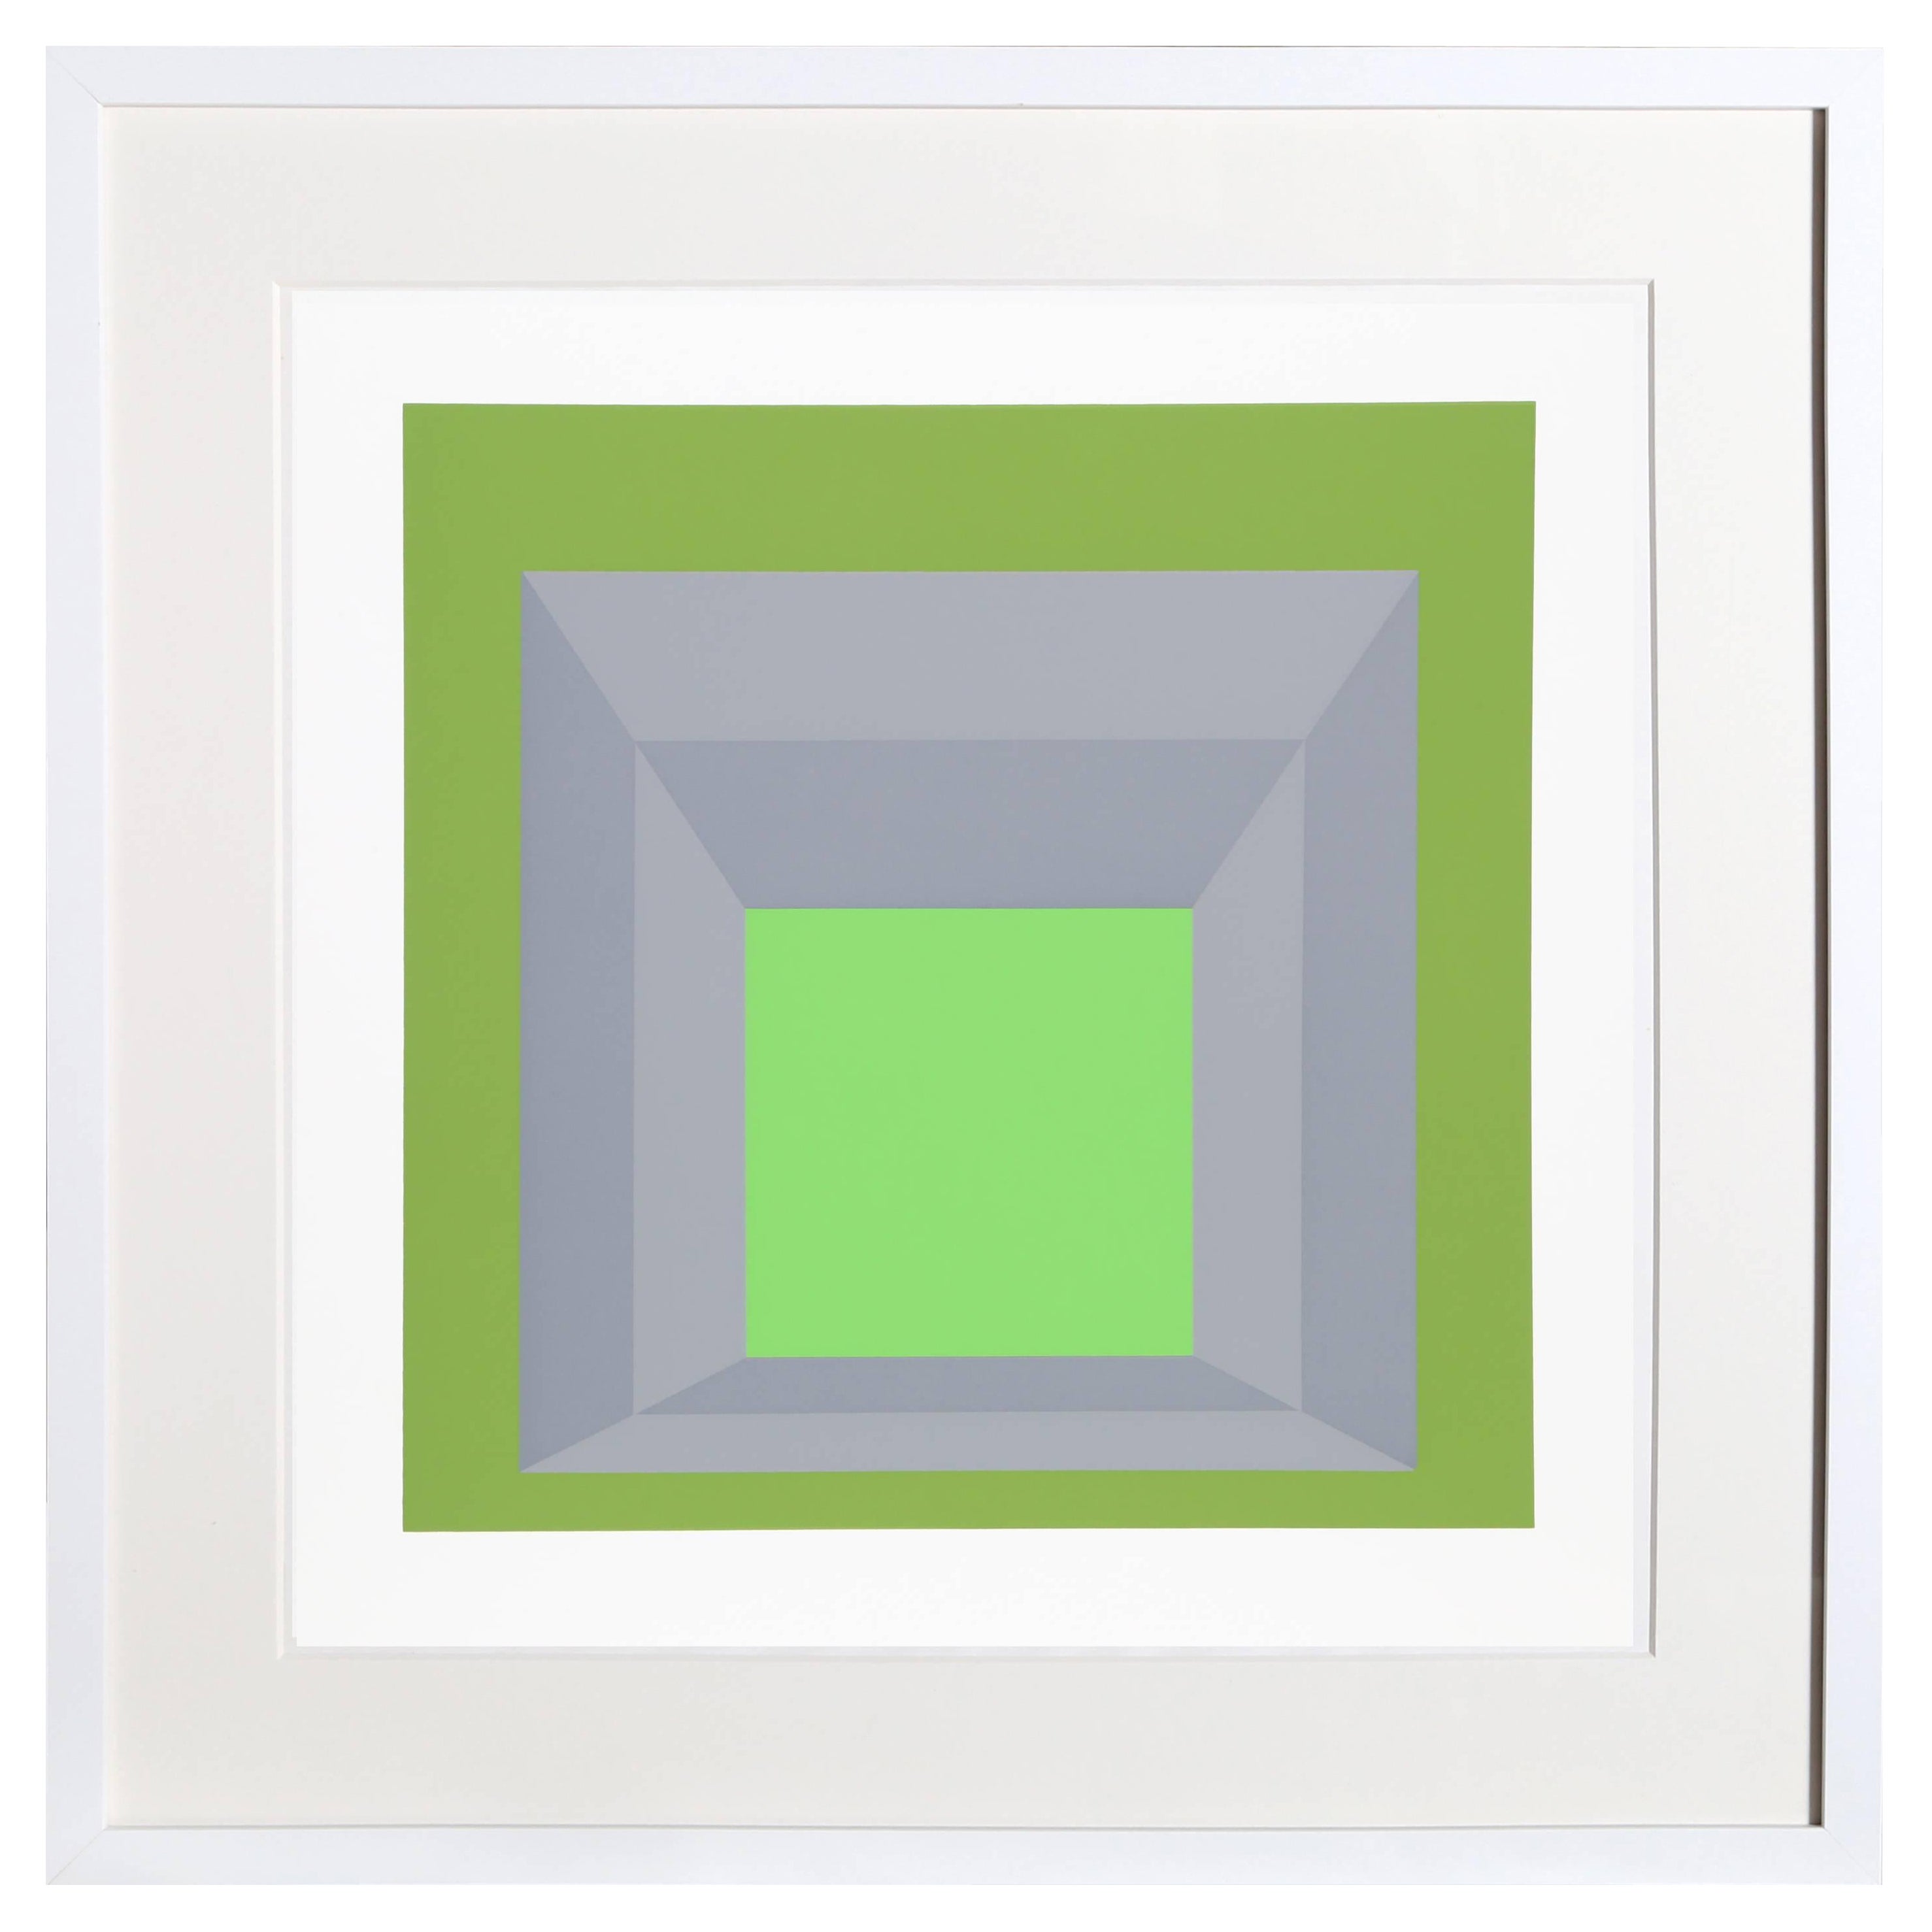 Une composition verte et grise qui présente une restitution plus dimensionnelle de la célèbre série "Hommage au carré" d'Albers. L'anneau extérieur de couleur vert foncé flanque une fenêtre de couleur grise avant de s'ouvrir sur un vert plus